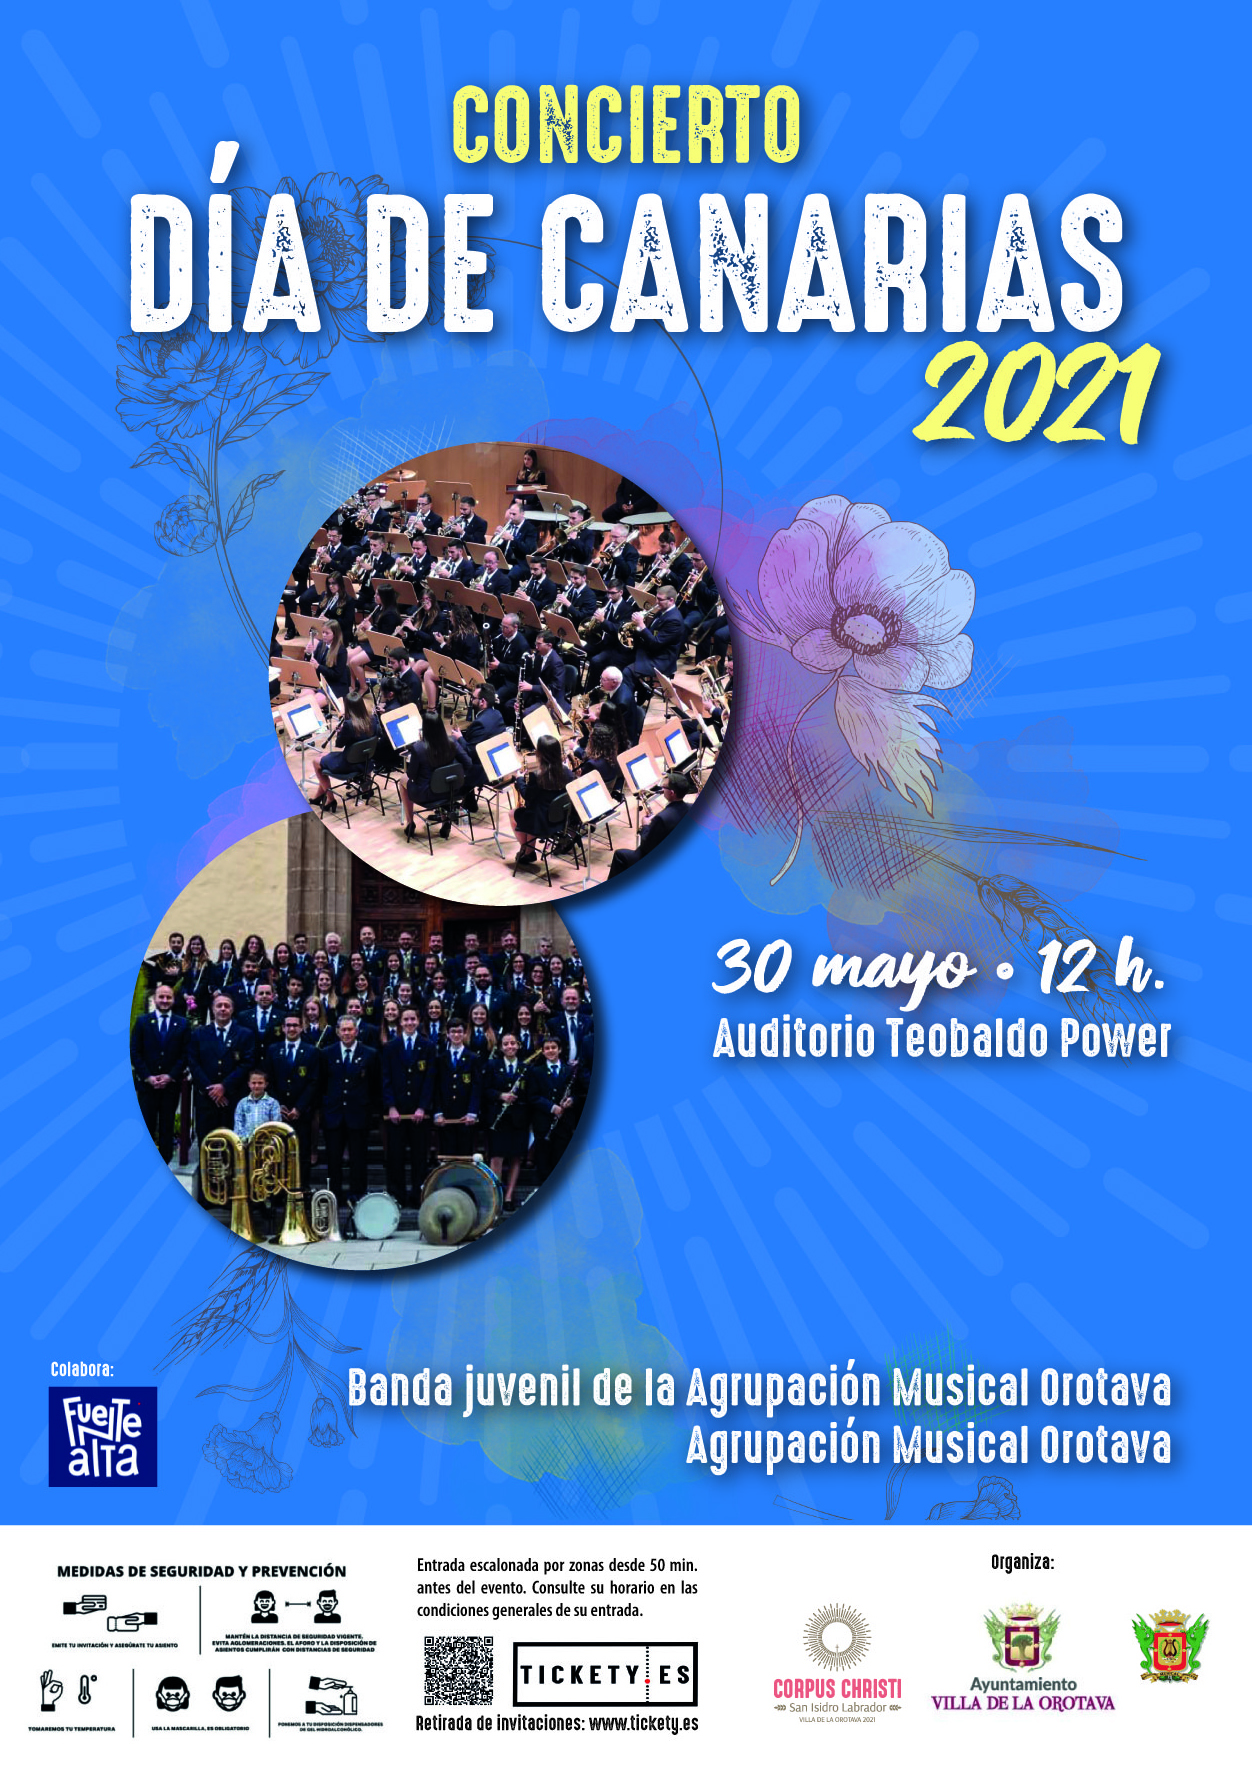 El acto tendrá lugar el próximo 30 de mayo (12:00 horas), en el Auditorio Teobaldo Power, dentro del programa de las Fiestas Patronales de la Villa de La Orotava y será interpretado tanto por la Banda Juvenil como por la Banda de Música